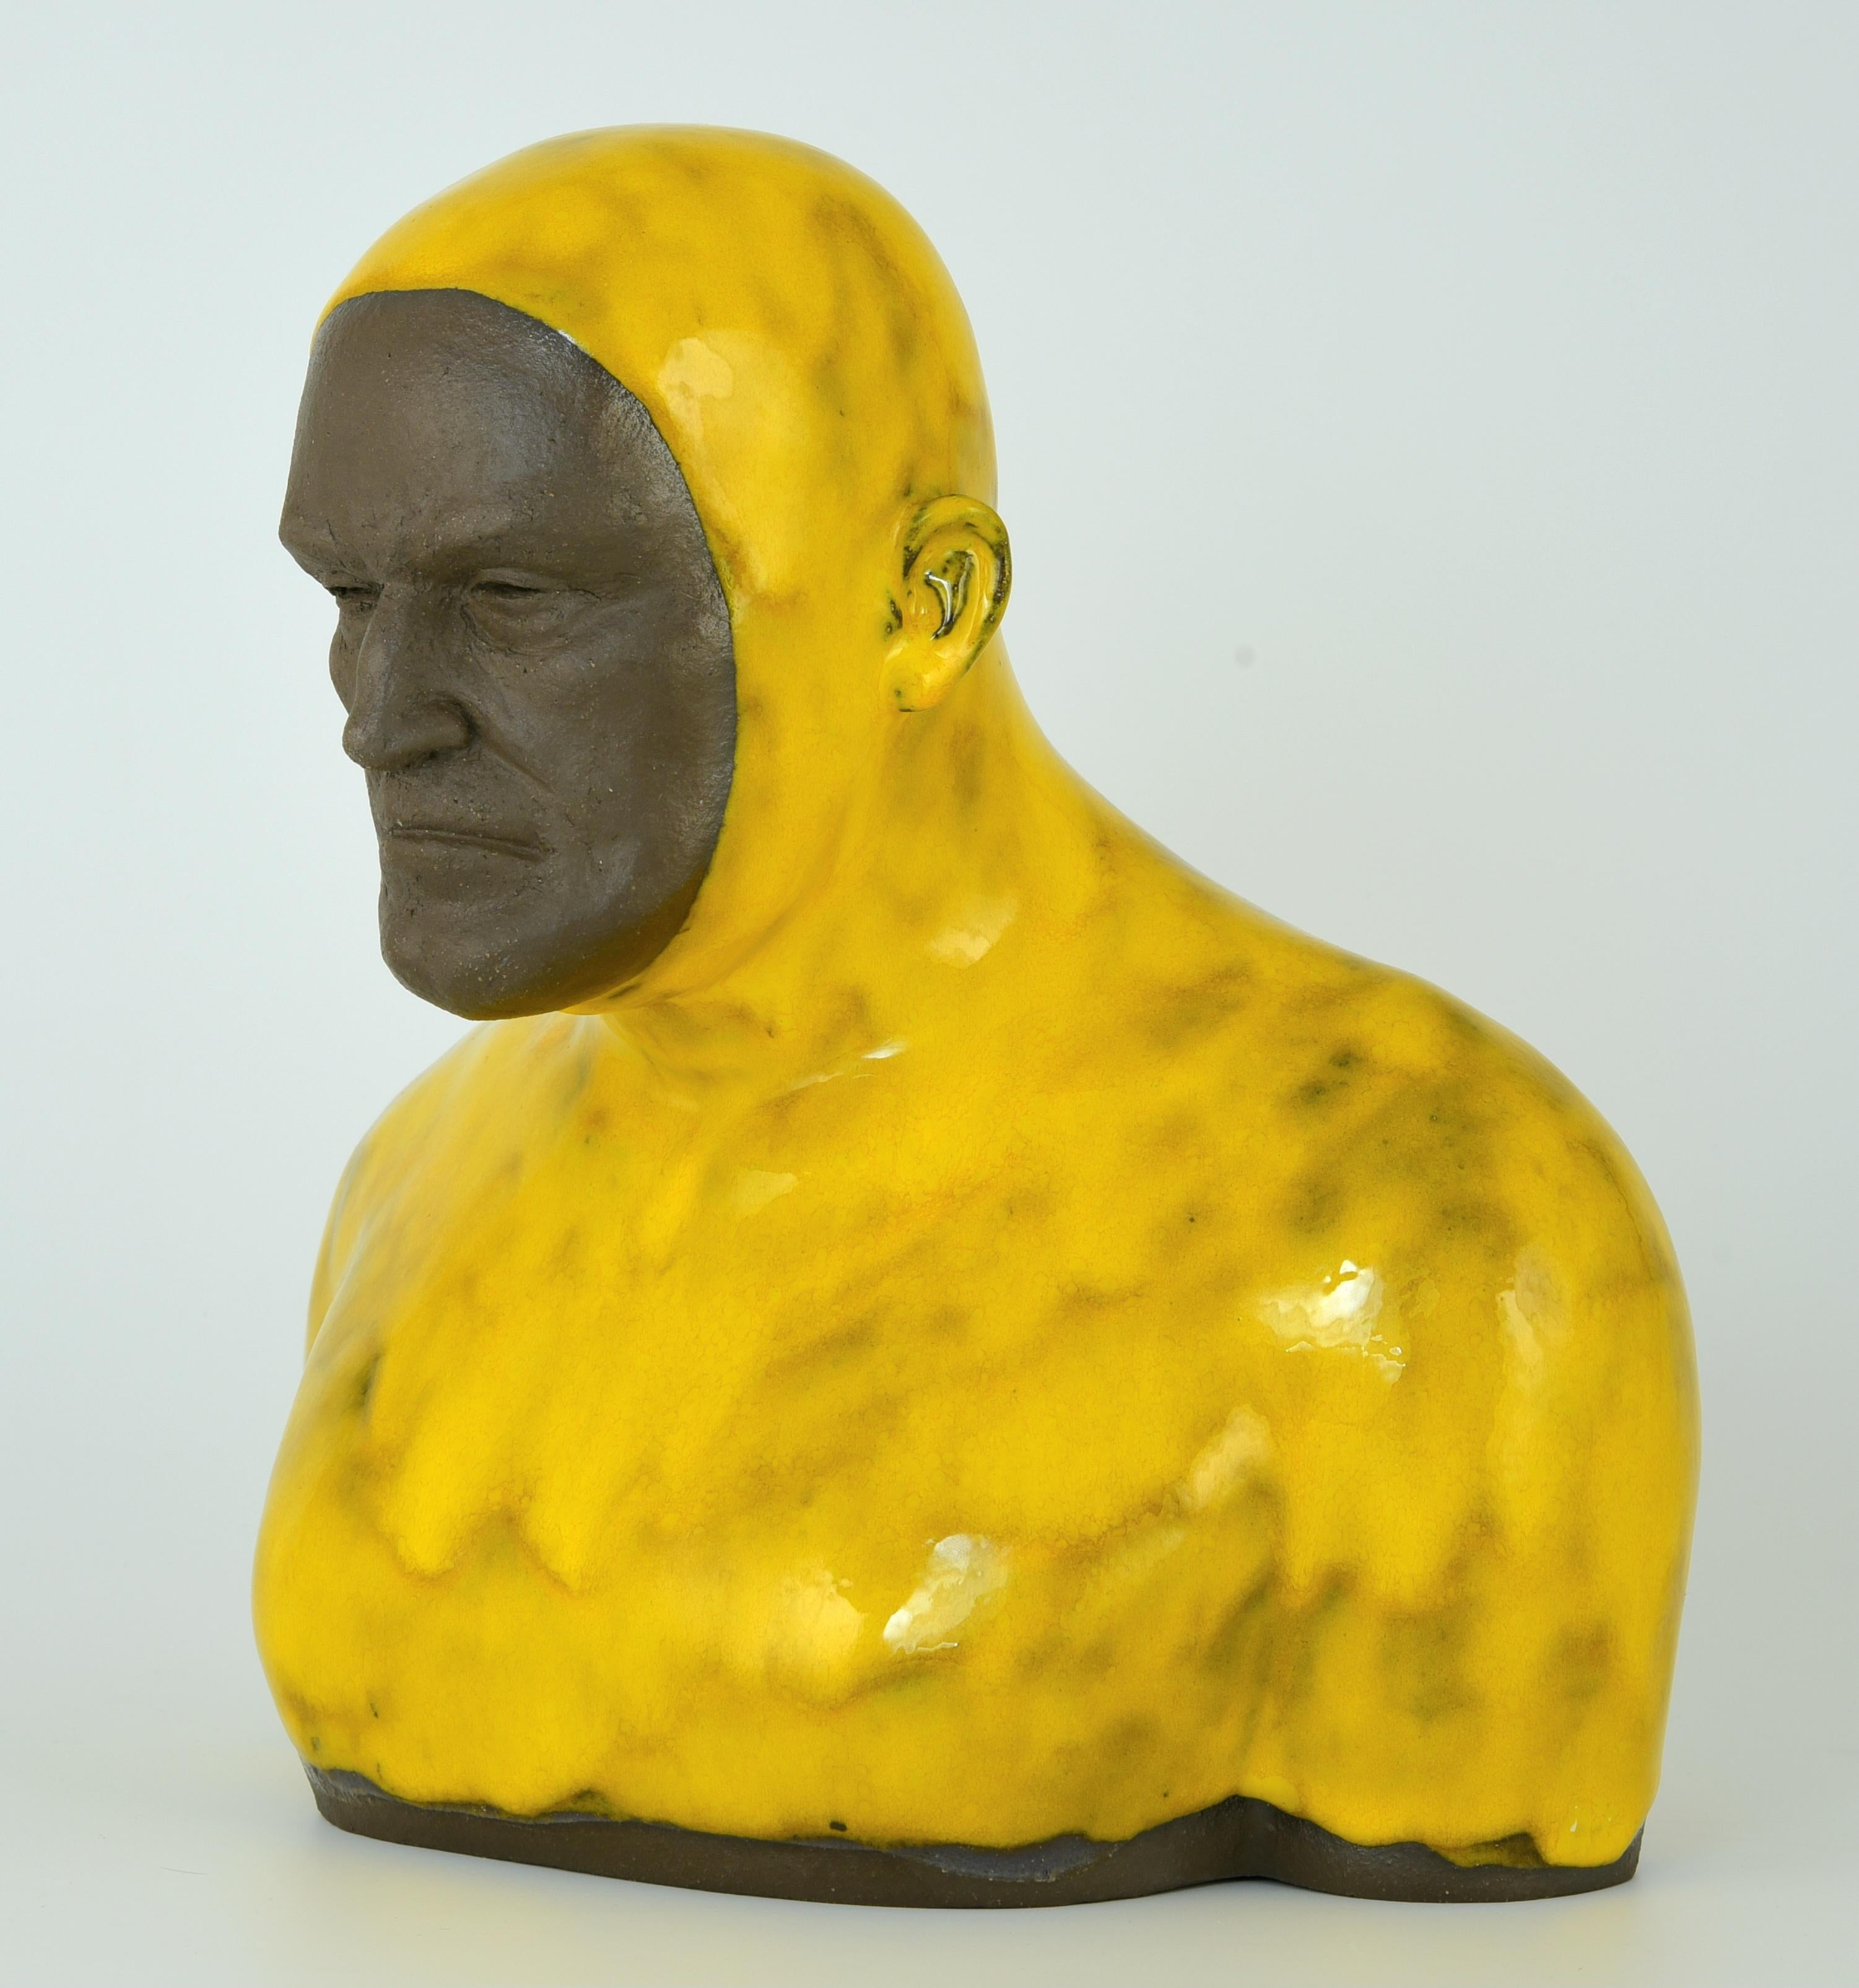 Gelber Swimmer 2 Groß – handgefertigte moderne glasierte Keramikskulptur eines Mannes, Porträt – Sculpture von Tomasz Bielak